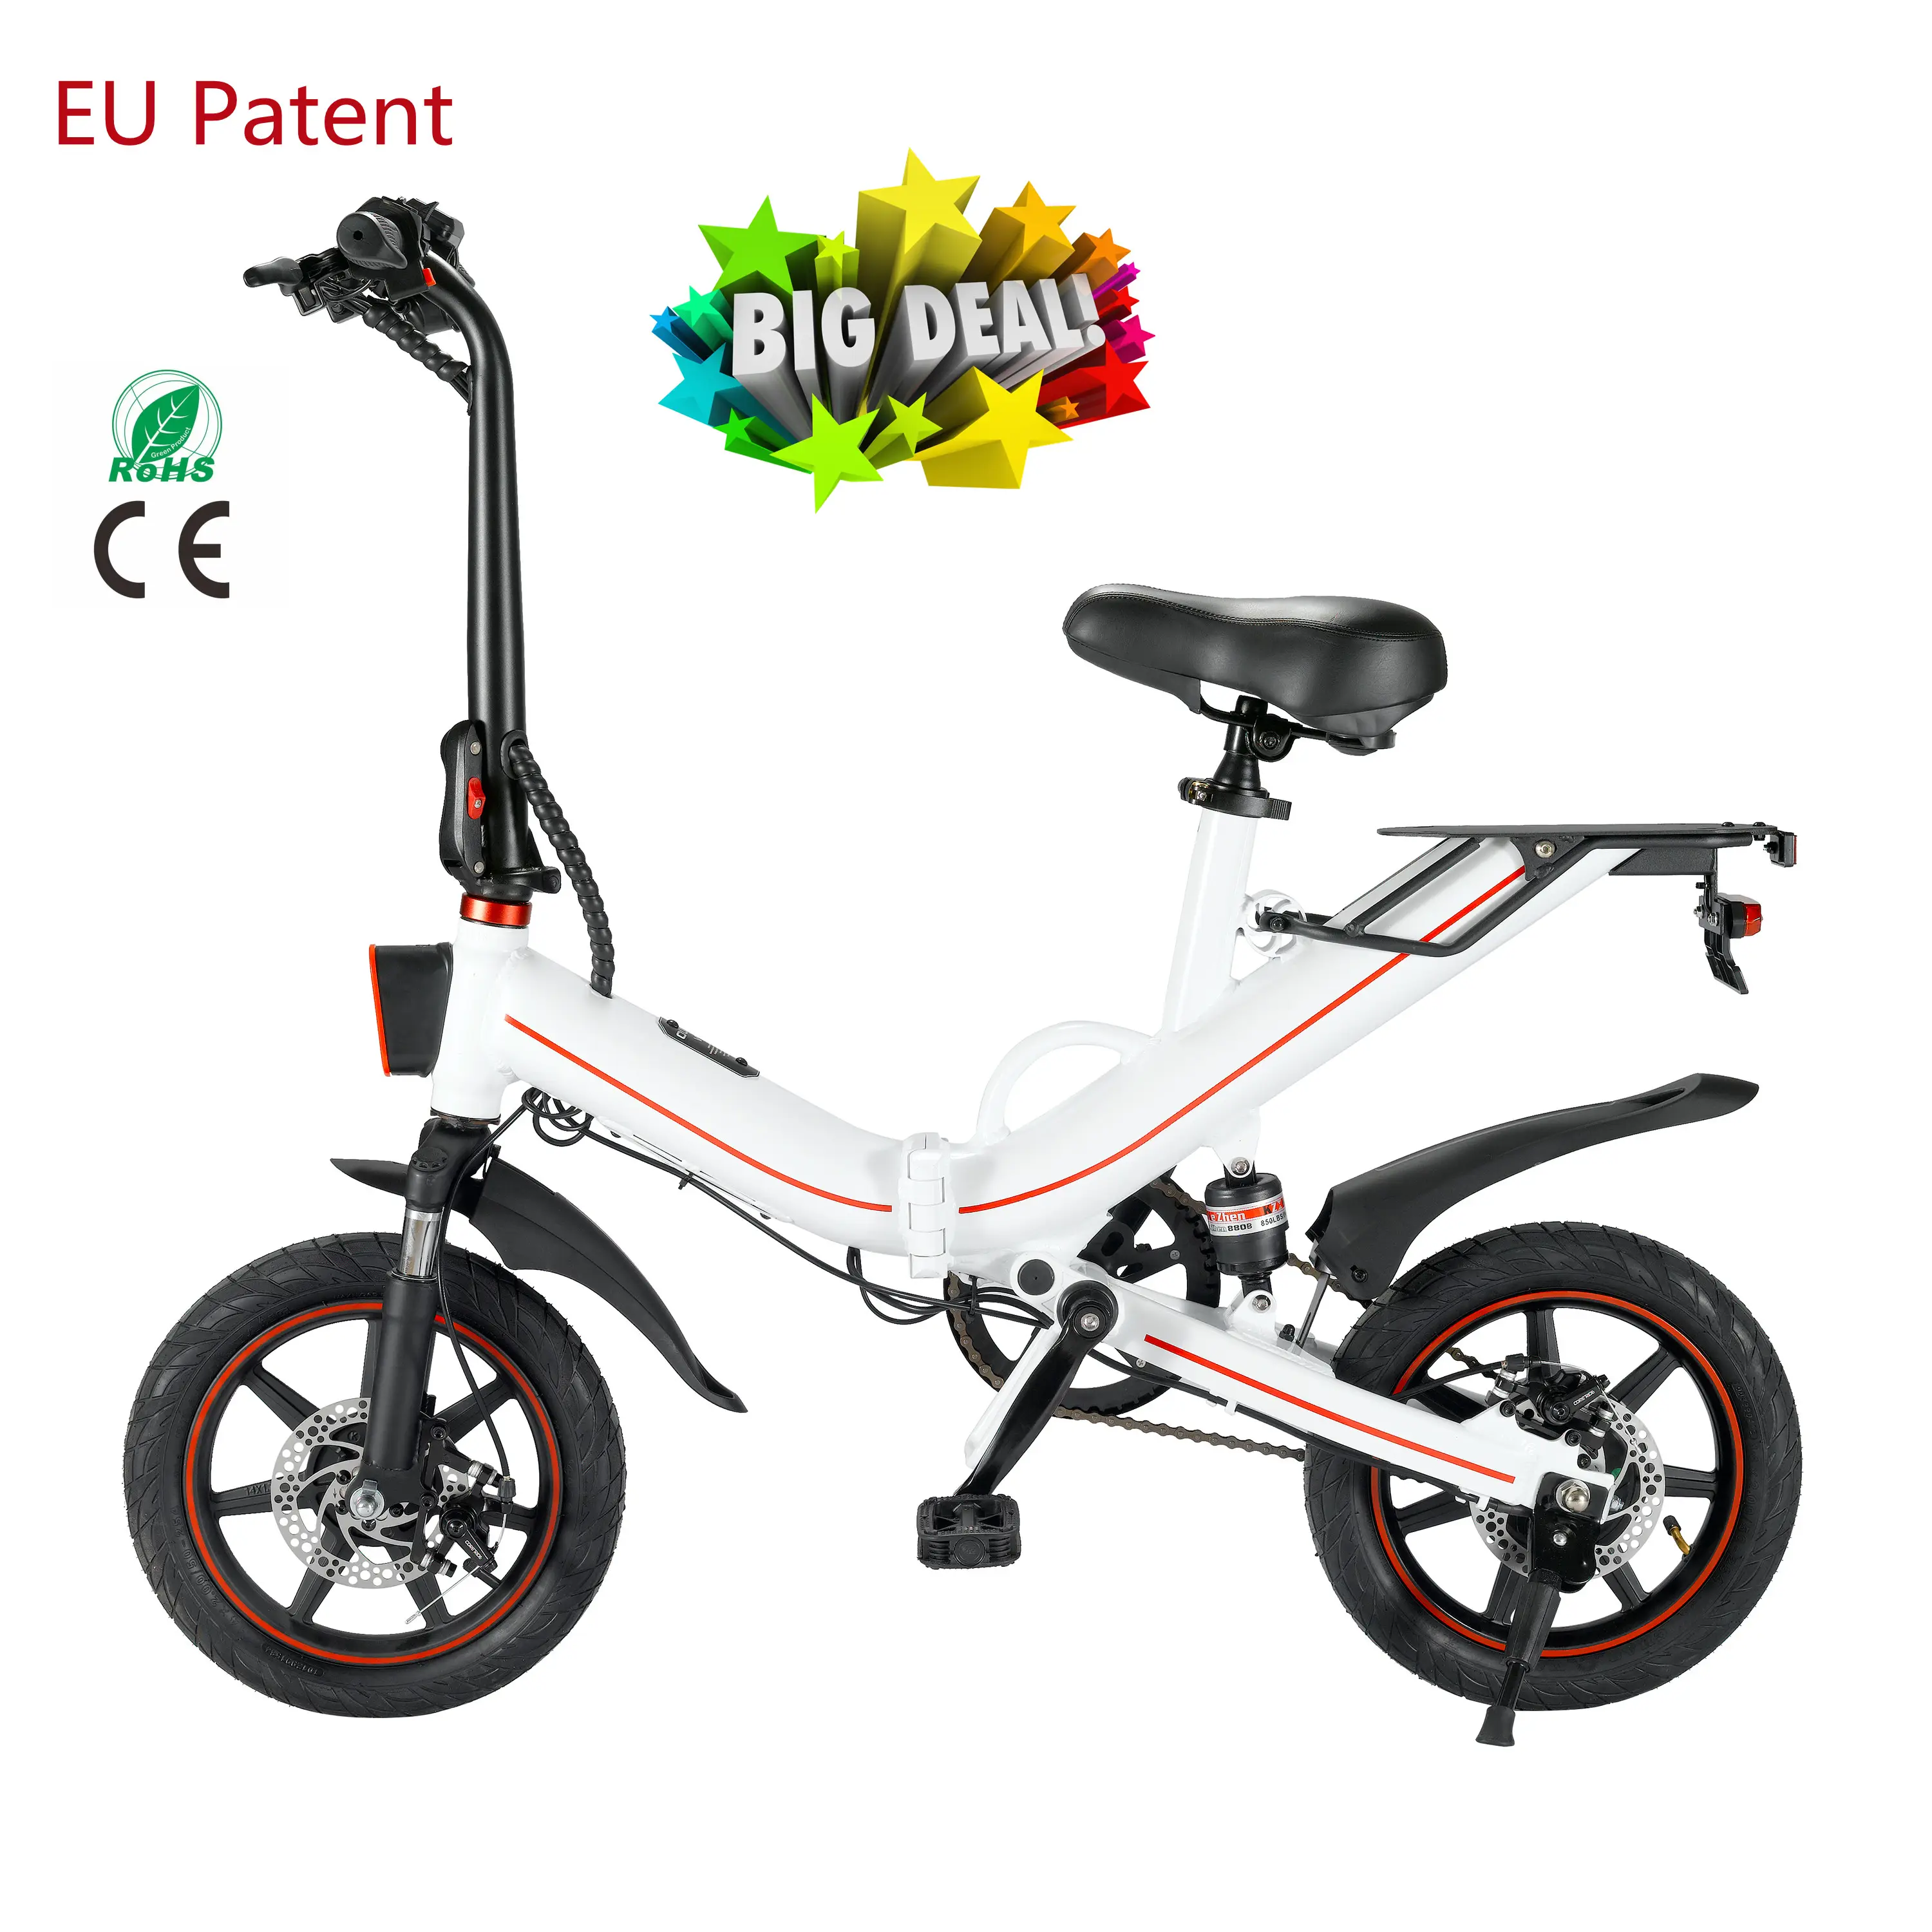 16インチ大人用電動自転車EU USA倉庫から購入ouxi自転車電動自転車35km/h速度70km範囲レトロ電動自転車